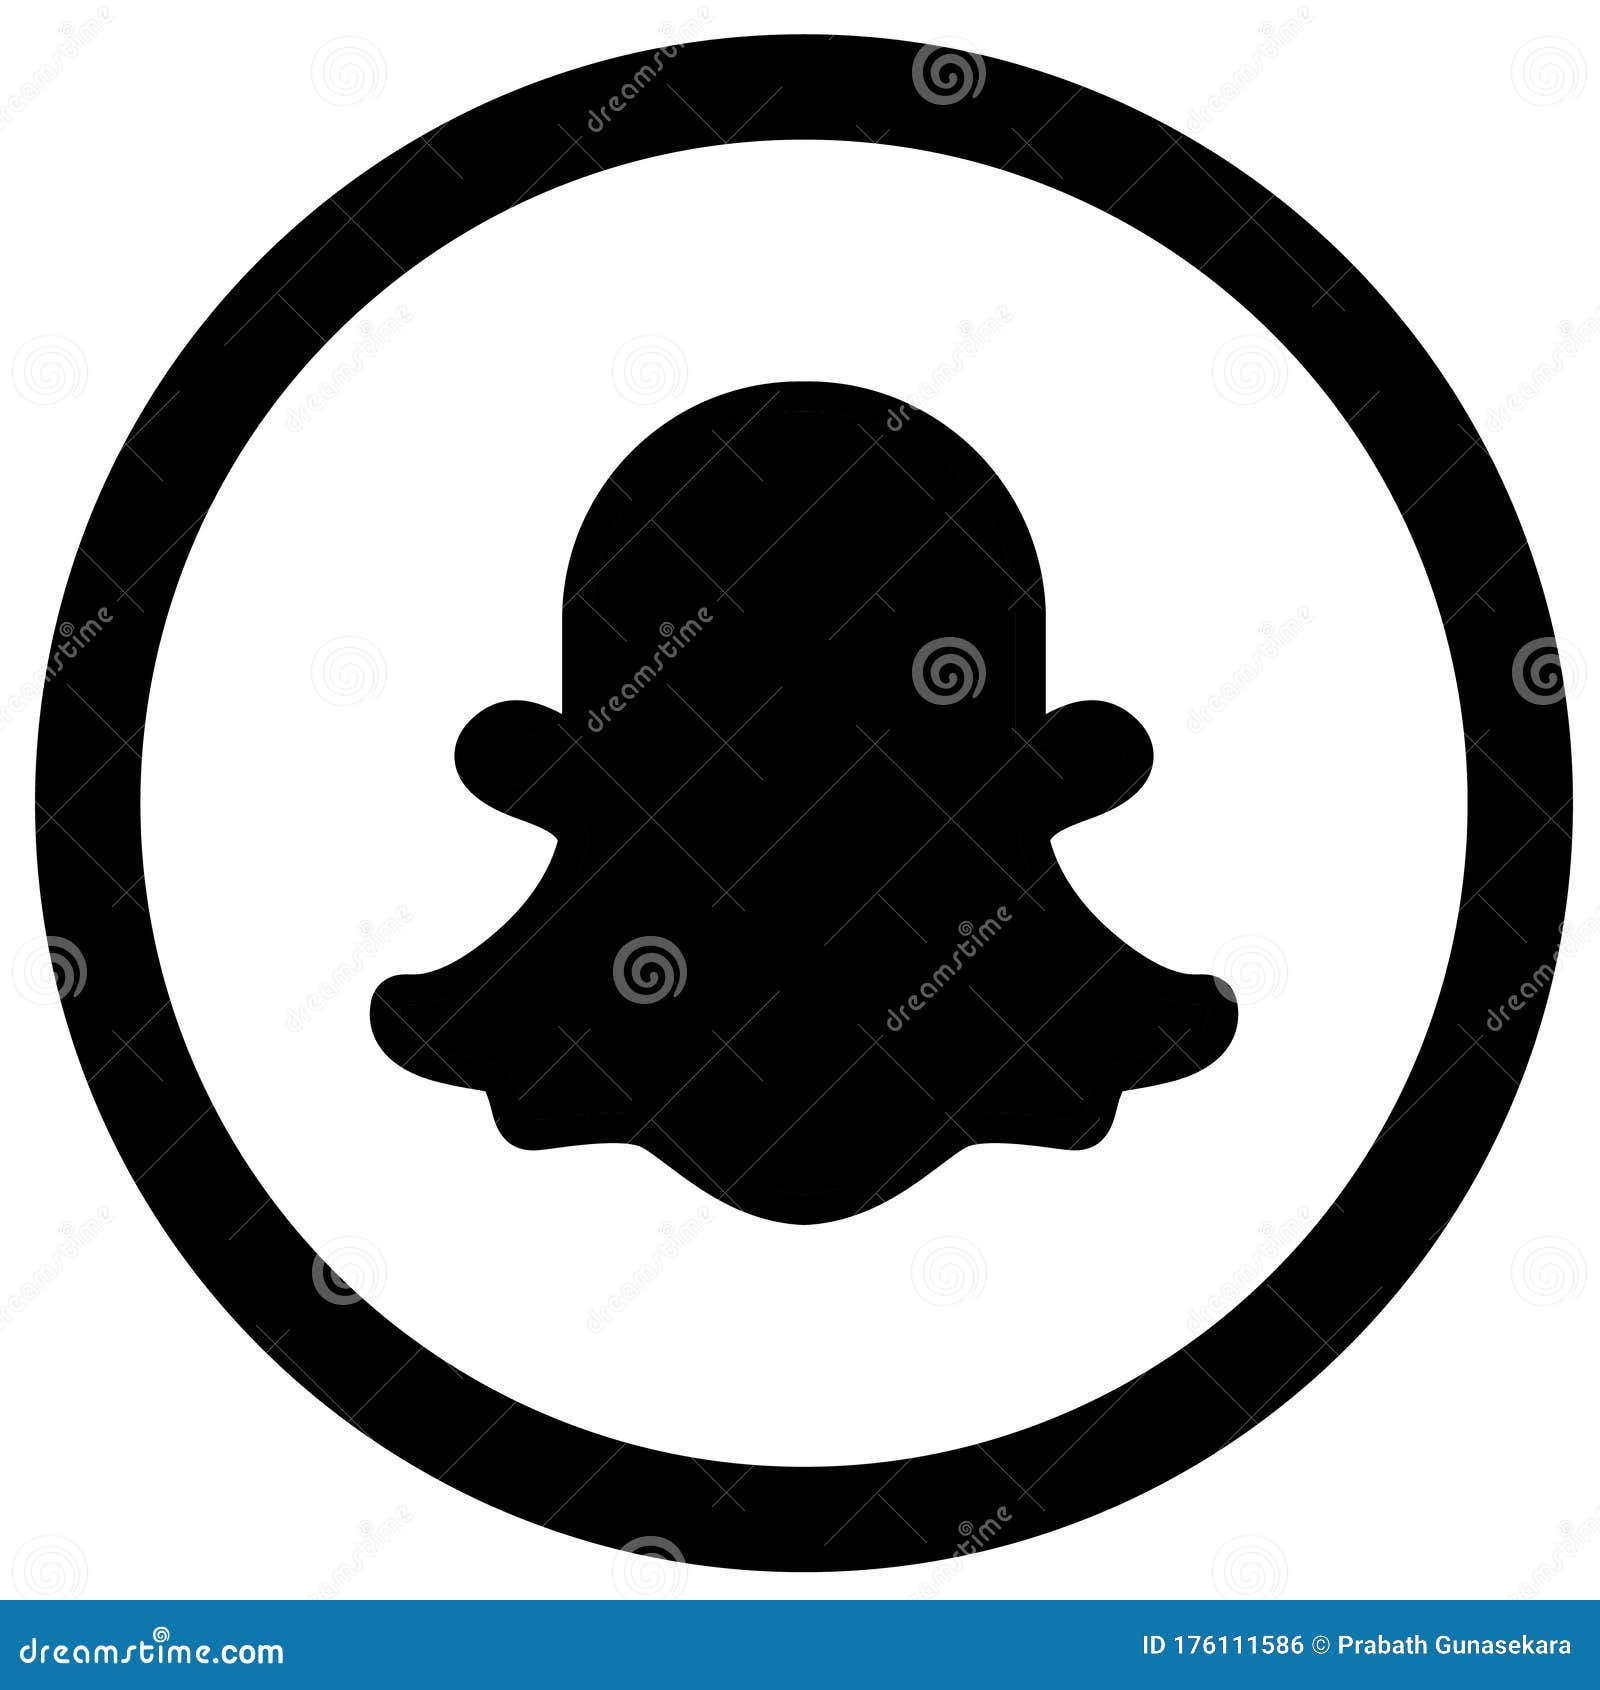 Snapchat Black Stock Illustrations 432 Snapchat Black Stock Illustrations Vectors Clipart Dreamstime